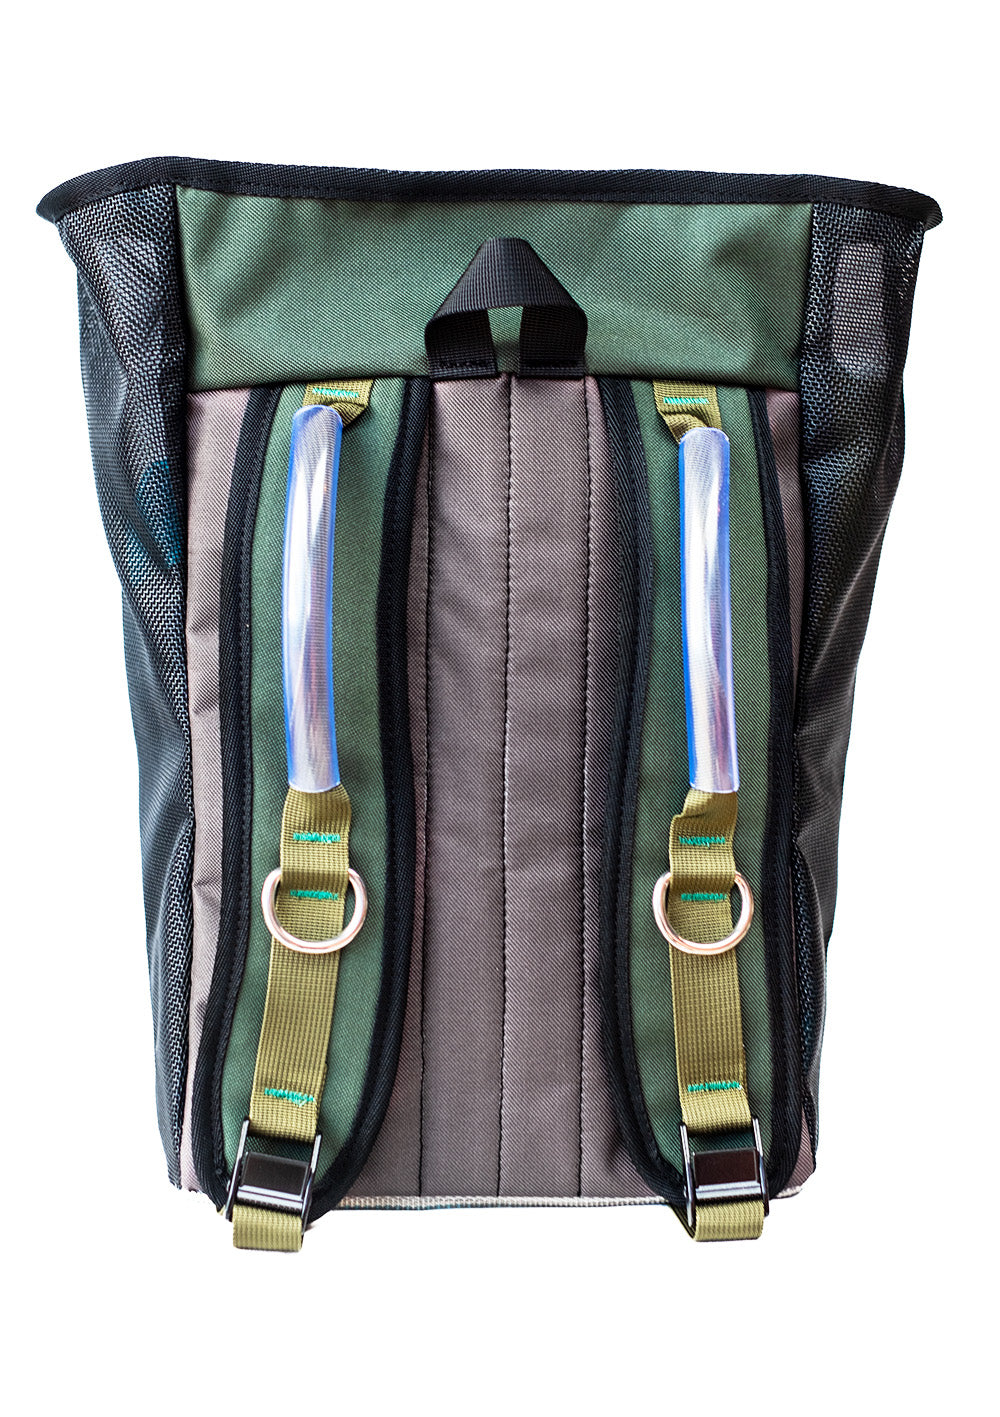 thwart mesh gear bag for whitewater rafting and kayaking